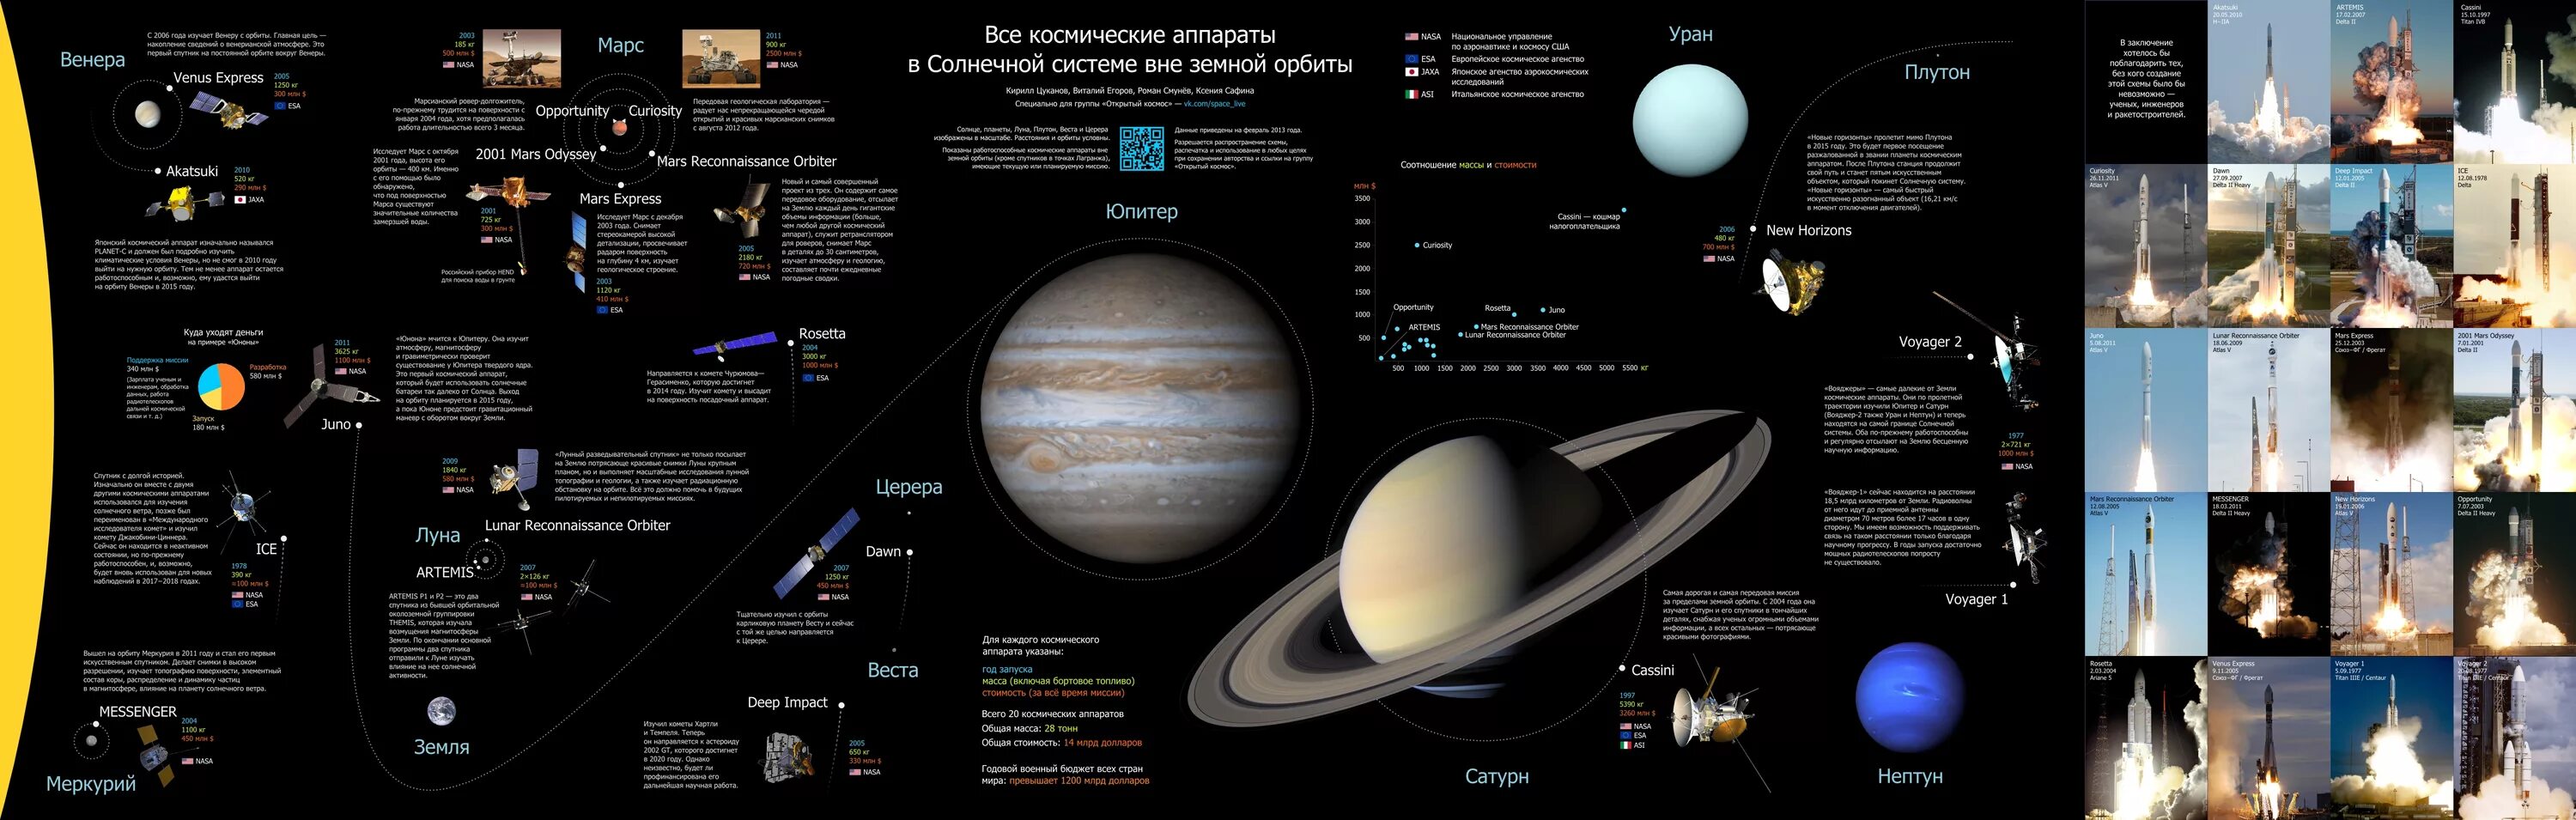 Хронология изучения солнечной системы. Карта солнечной системы. Карта планет солнечной системы. Исследование солнечной системы.